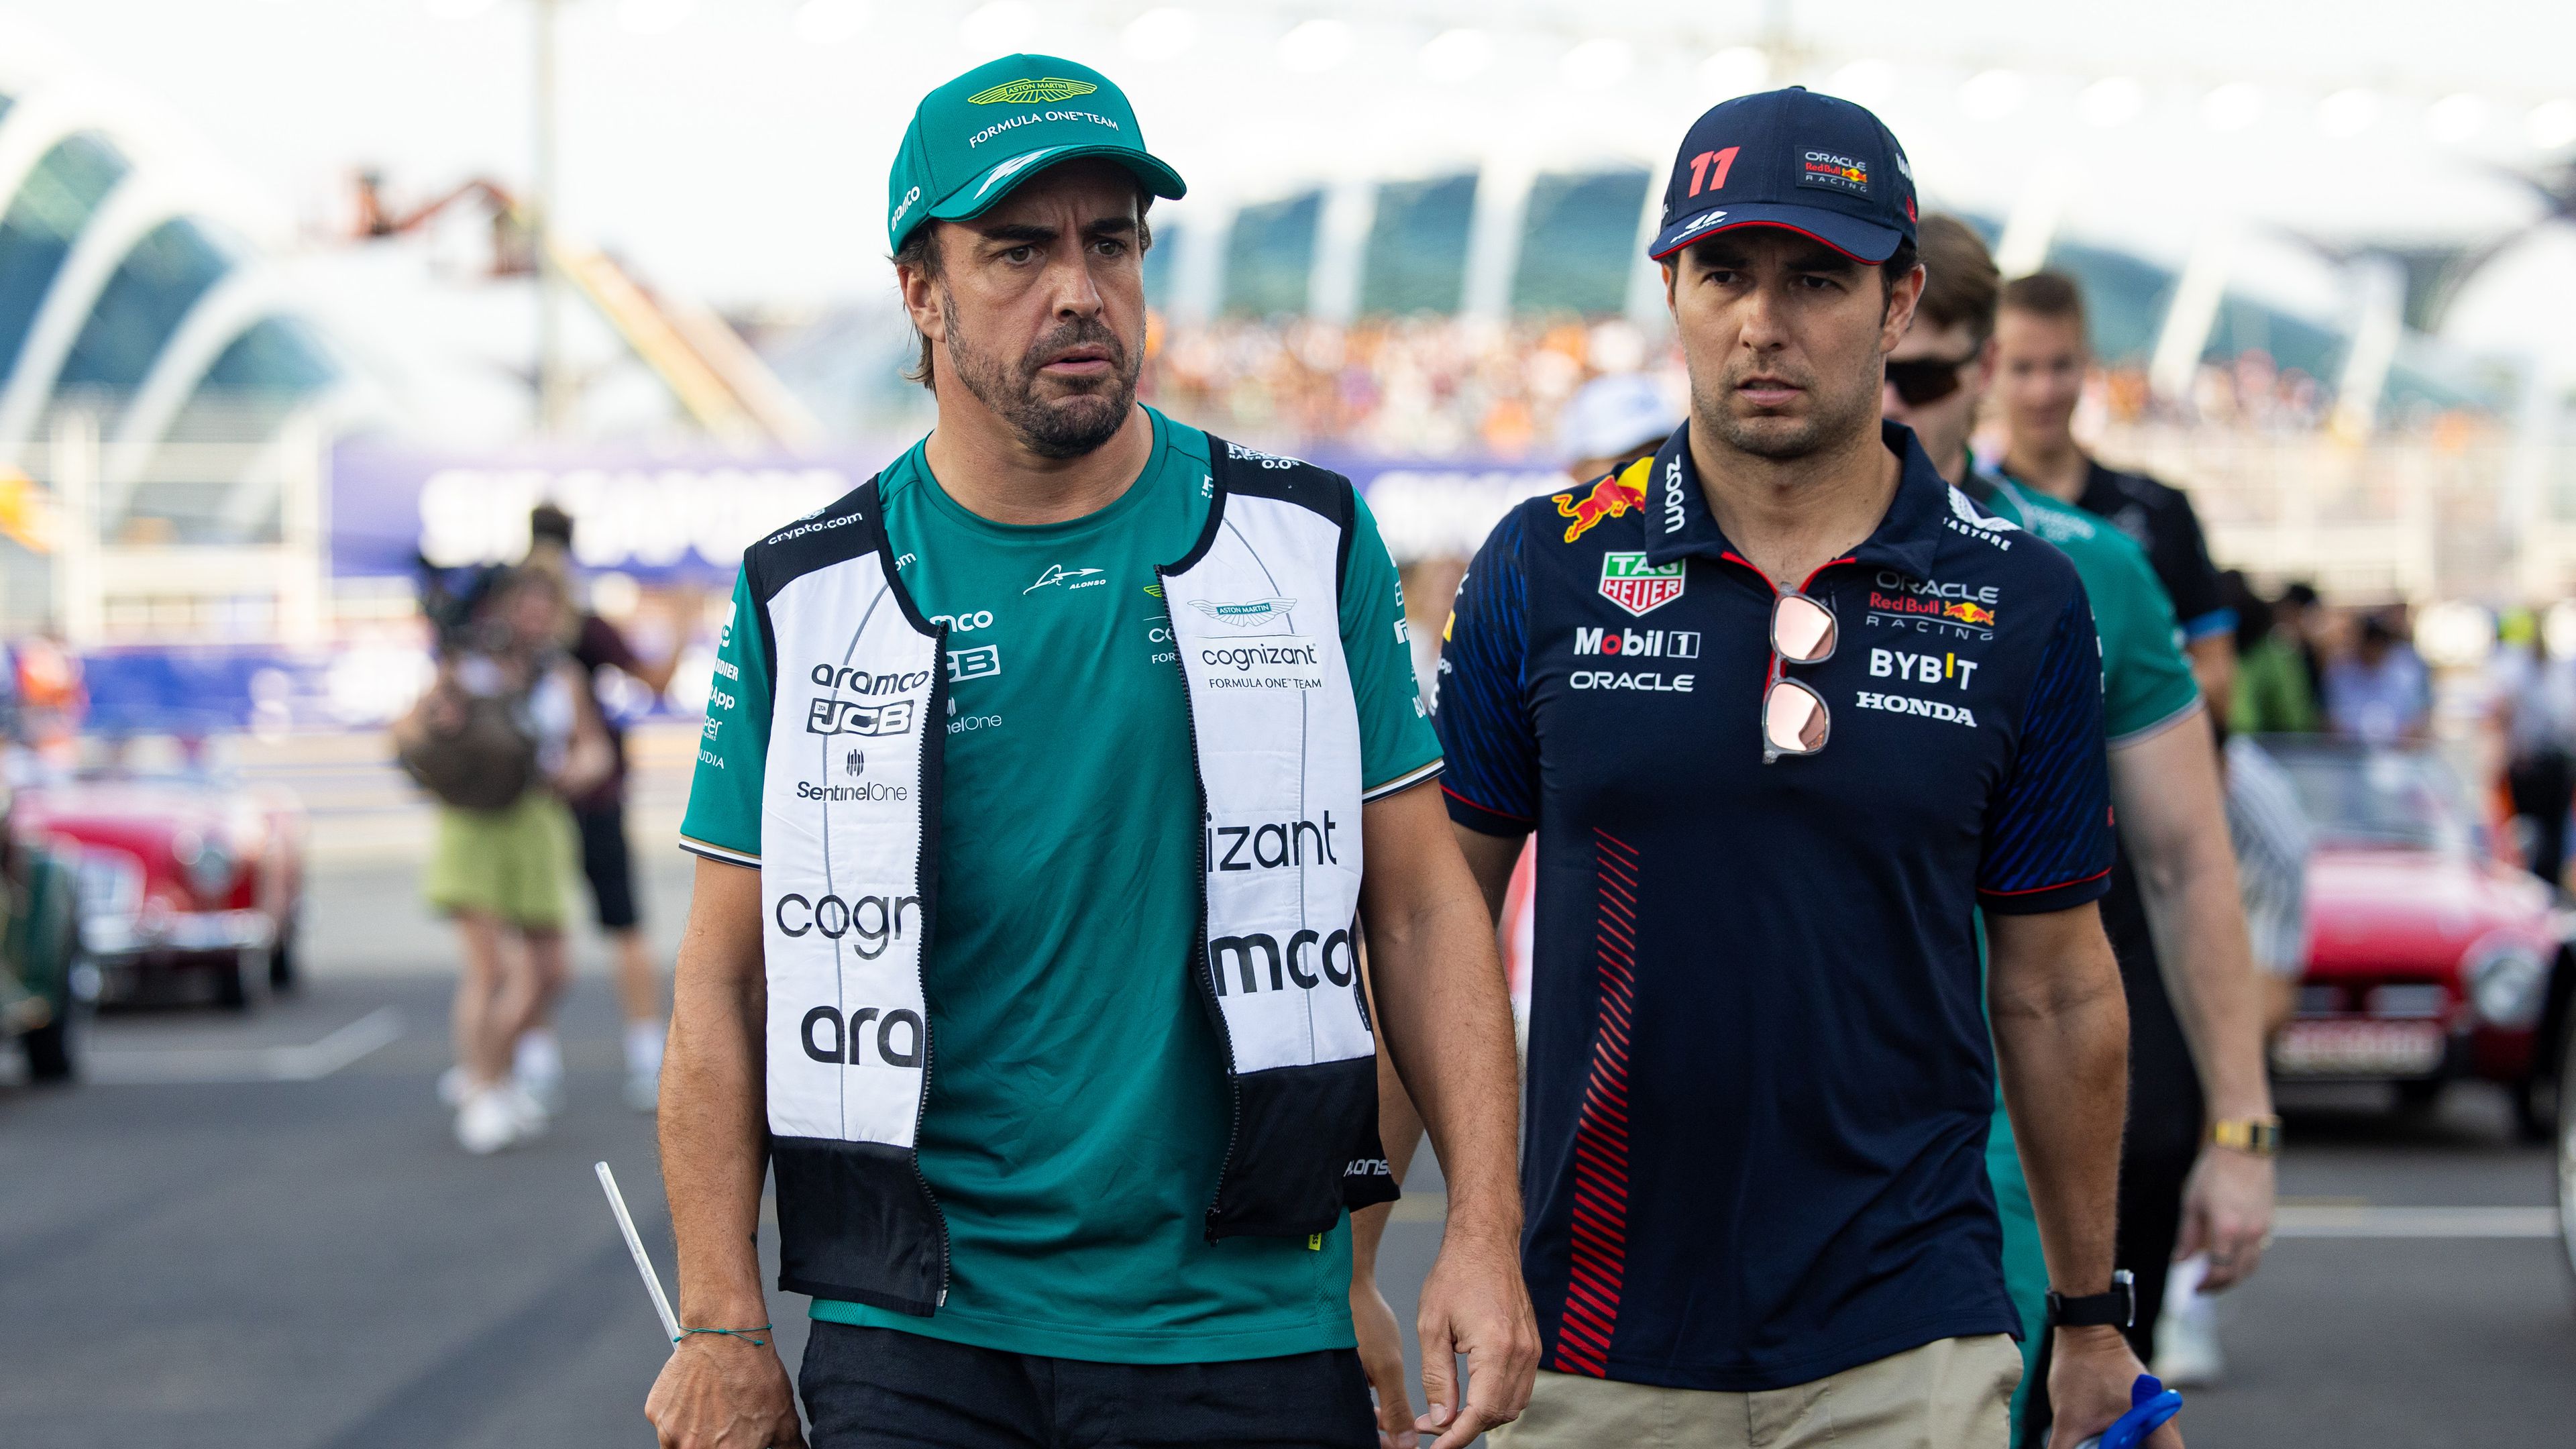 F1-hírek: megszólalt a Red Bull az Alonso szerződtetéséről szóló hírekkel kapcsolatban